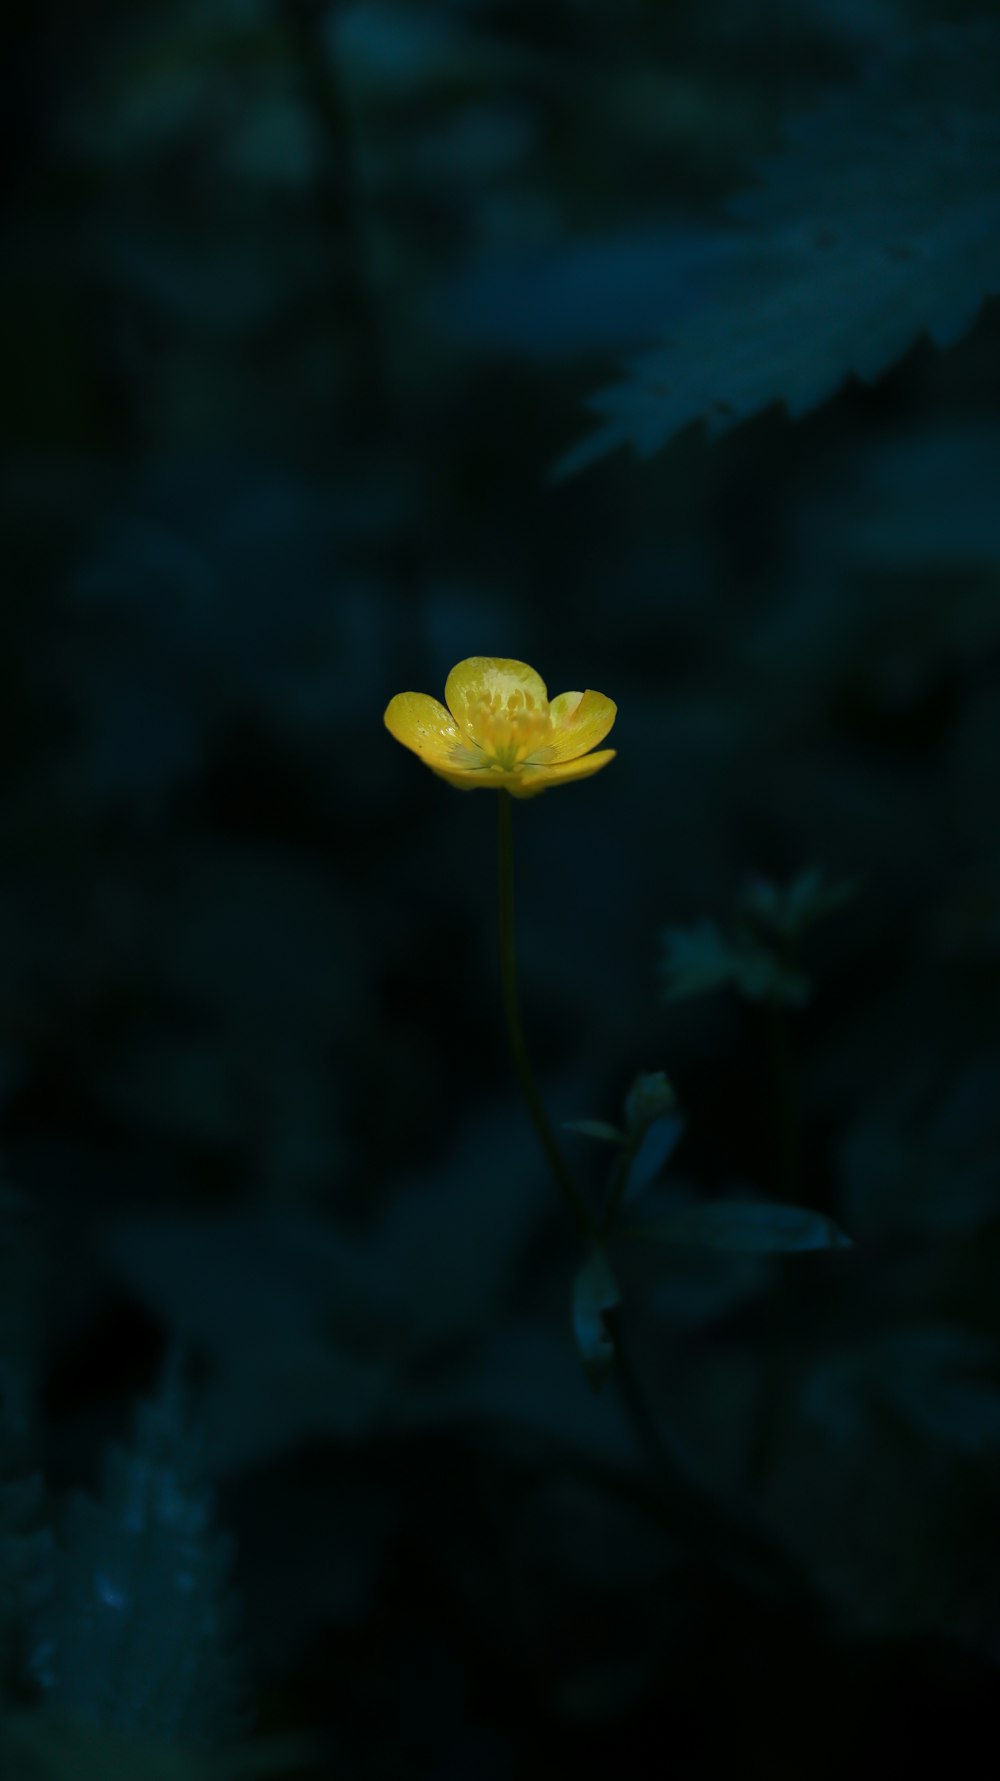 어둠 속의 노란 꽃 한 송이